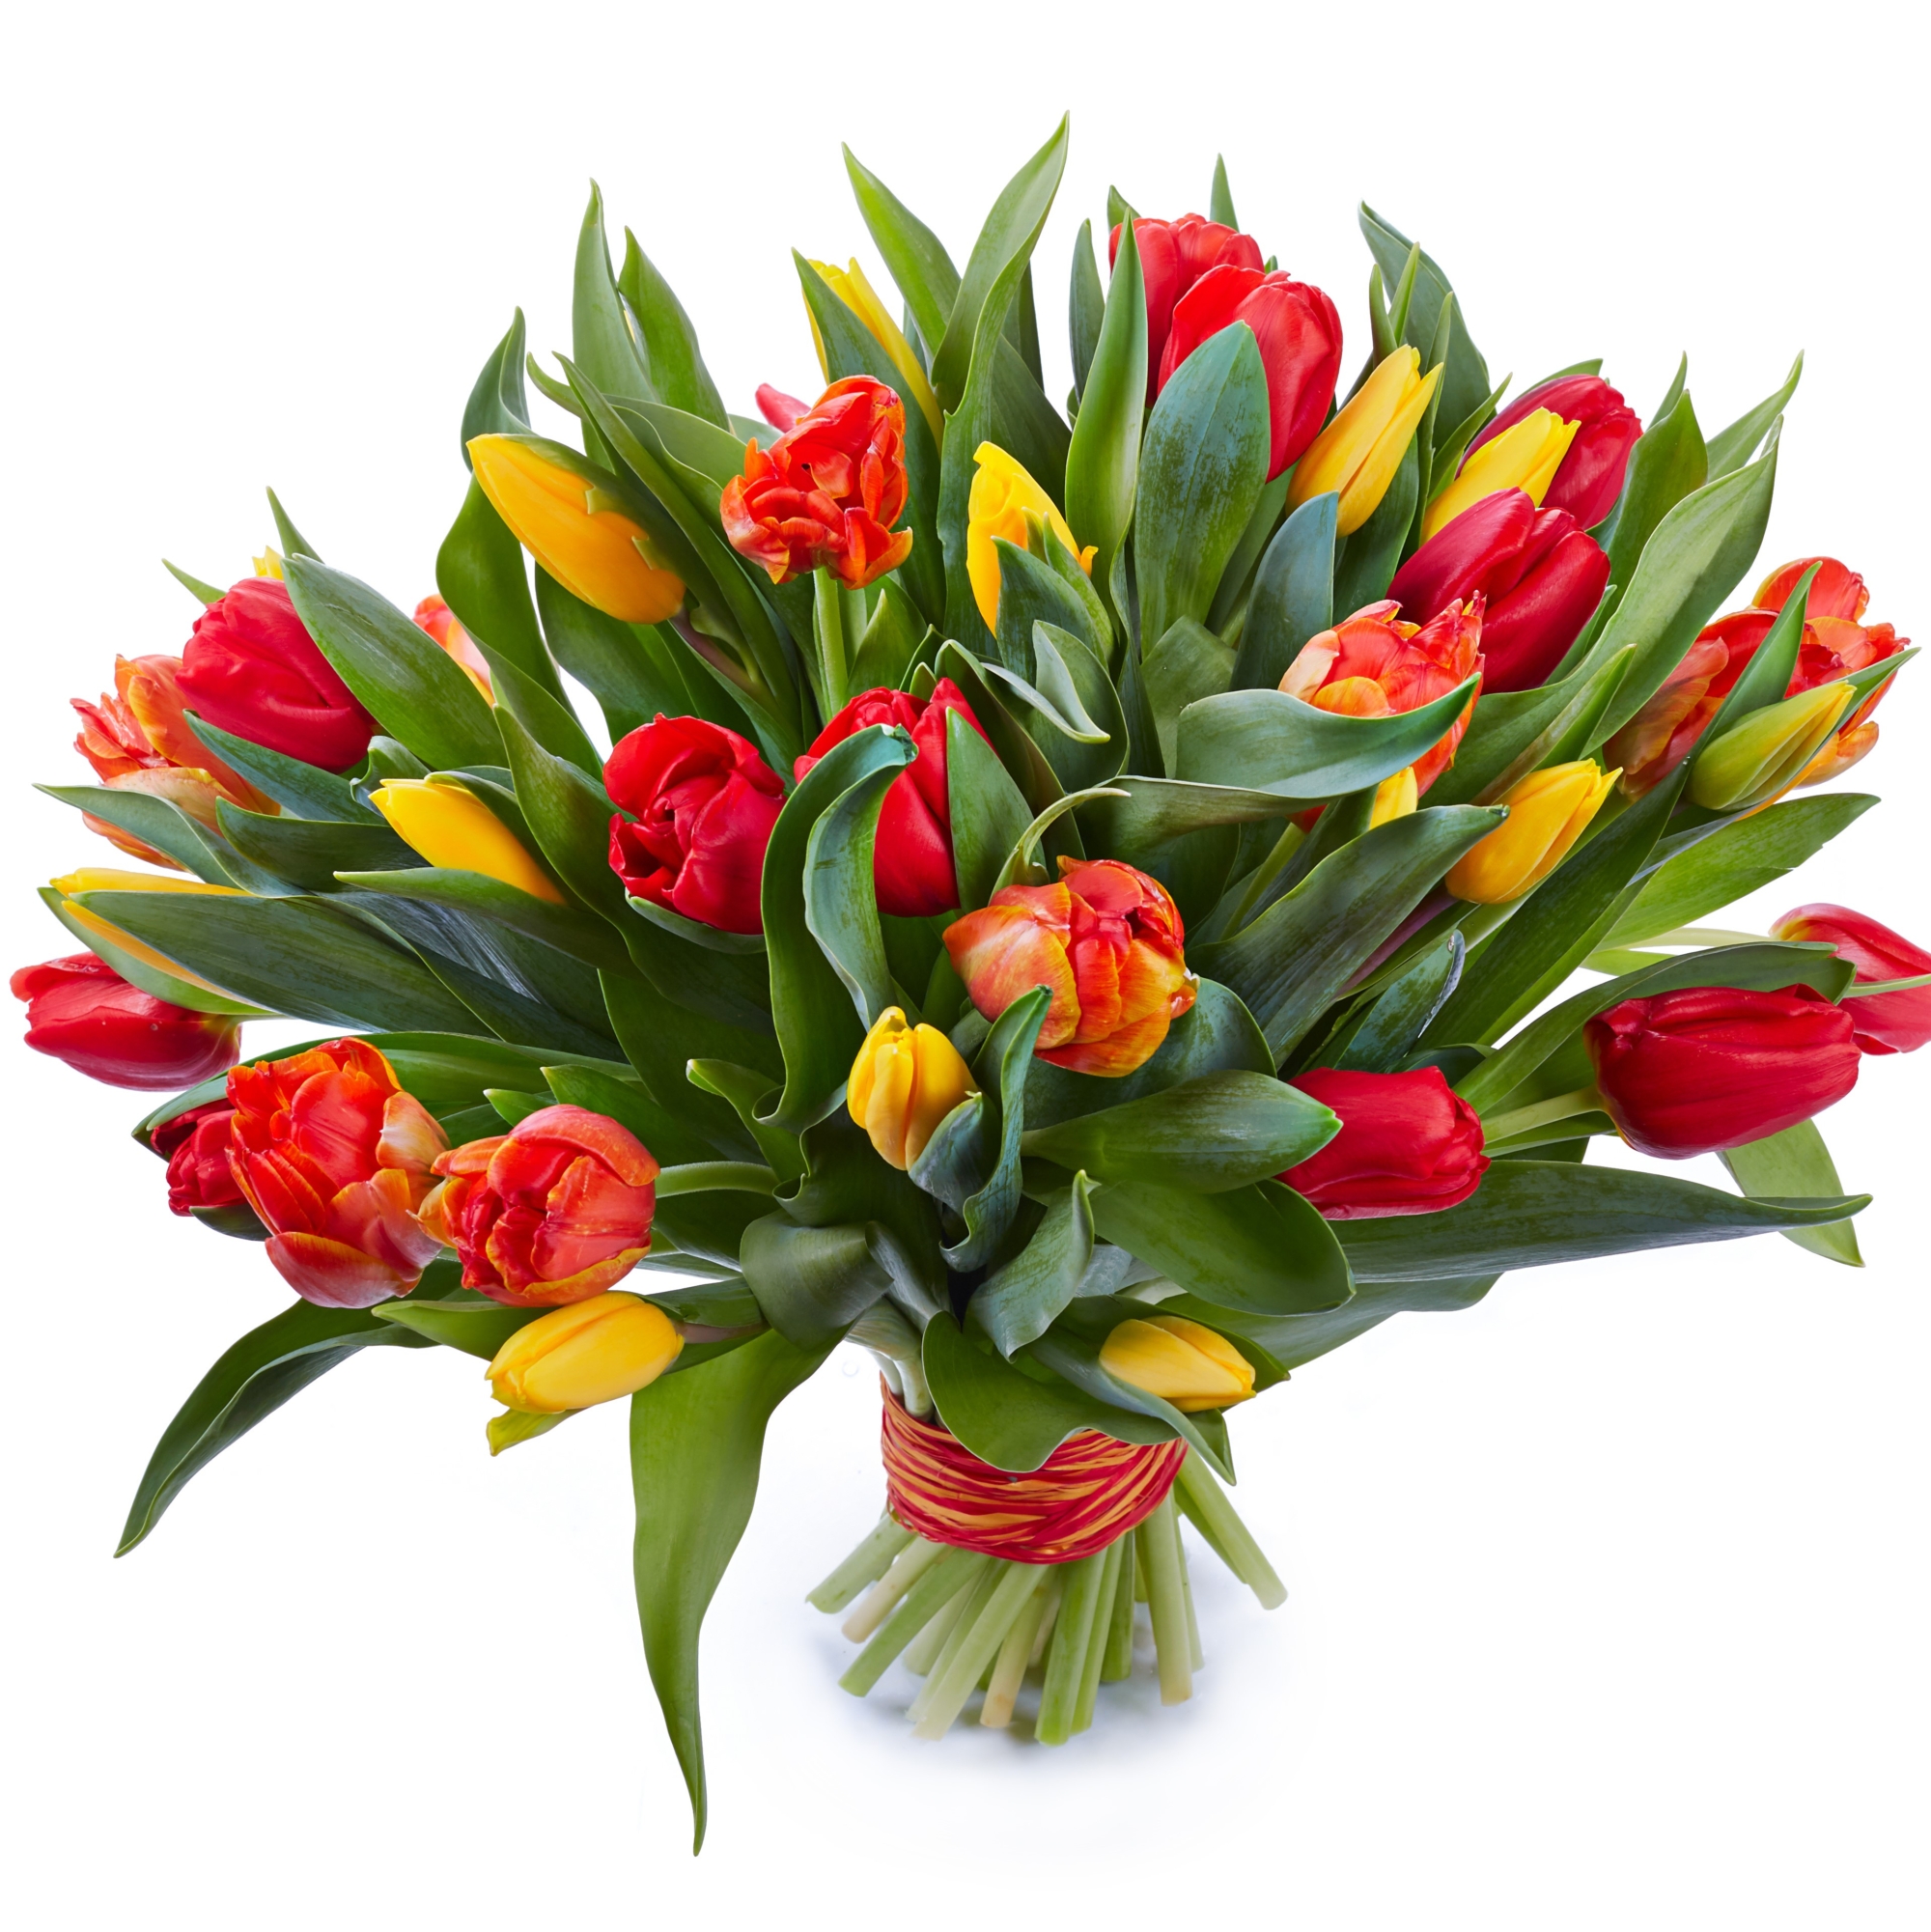 Tulipes jaunes et rouges - Botanica Brussels